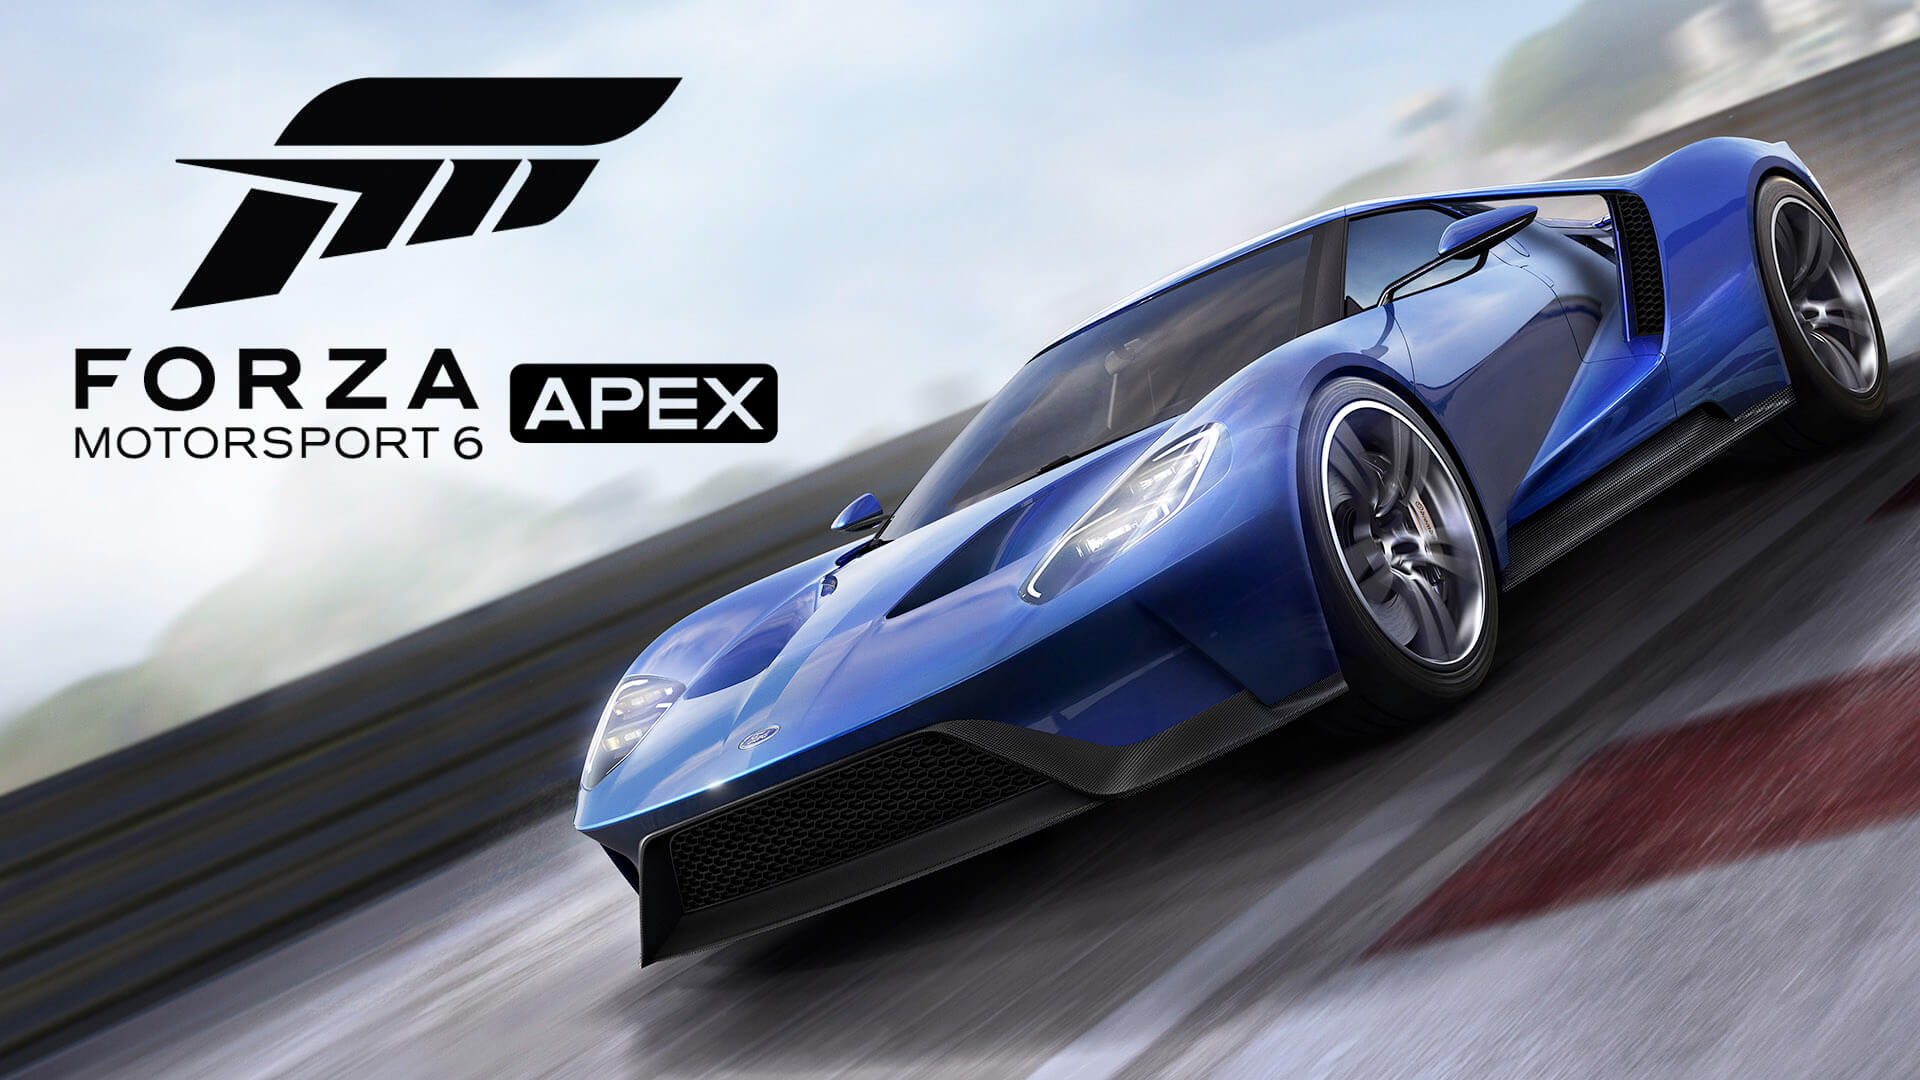 Forza Motorsport 6: Apex, si apre la beta per Windows 10